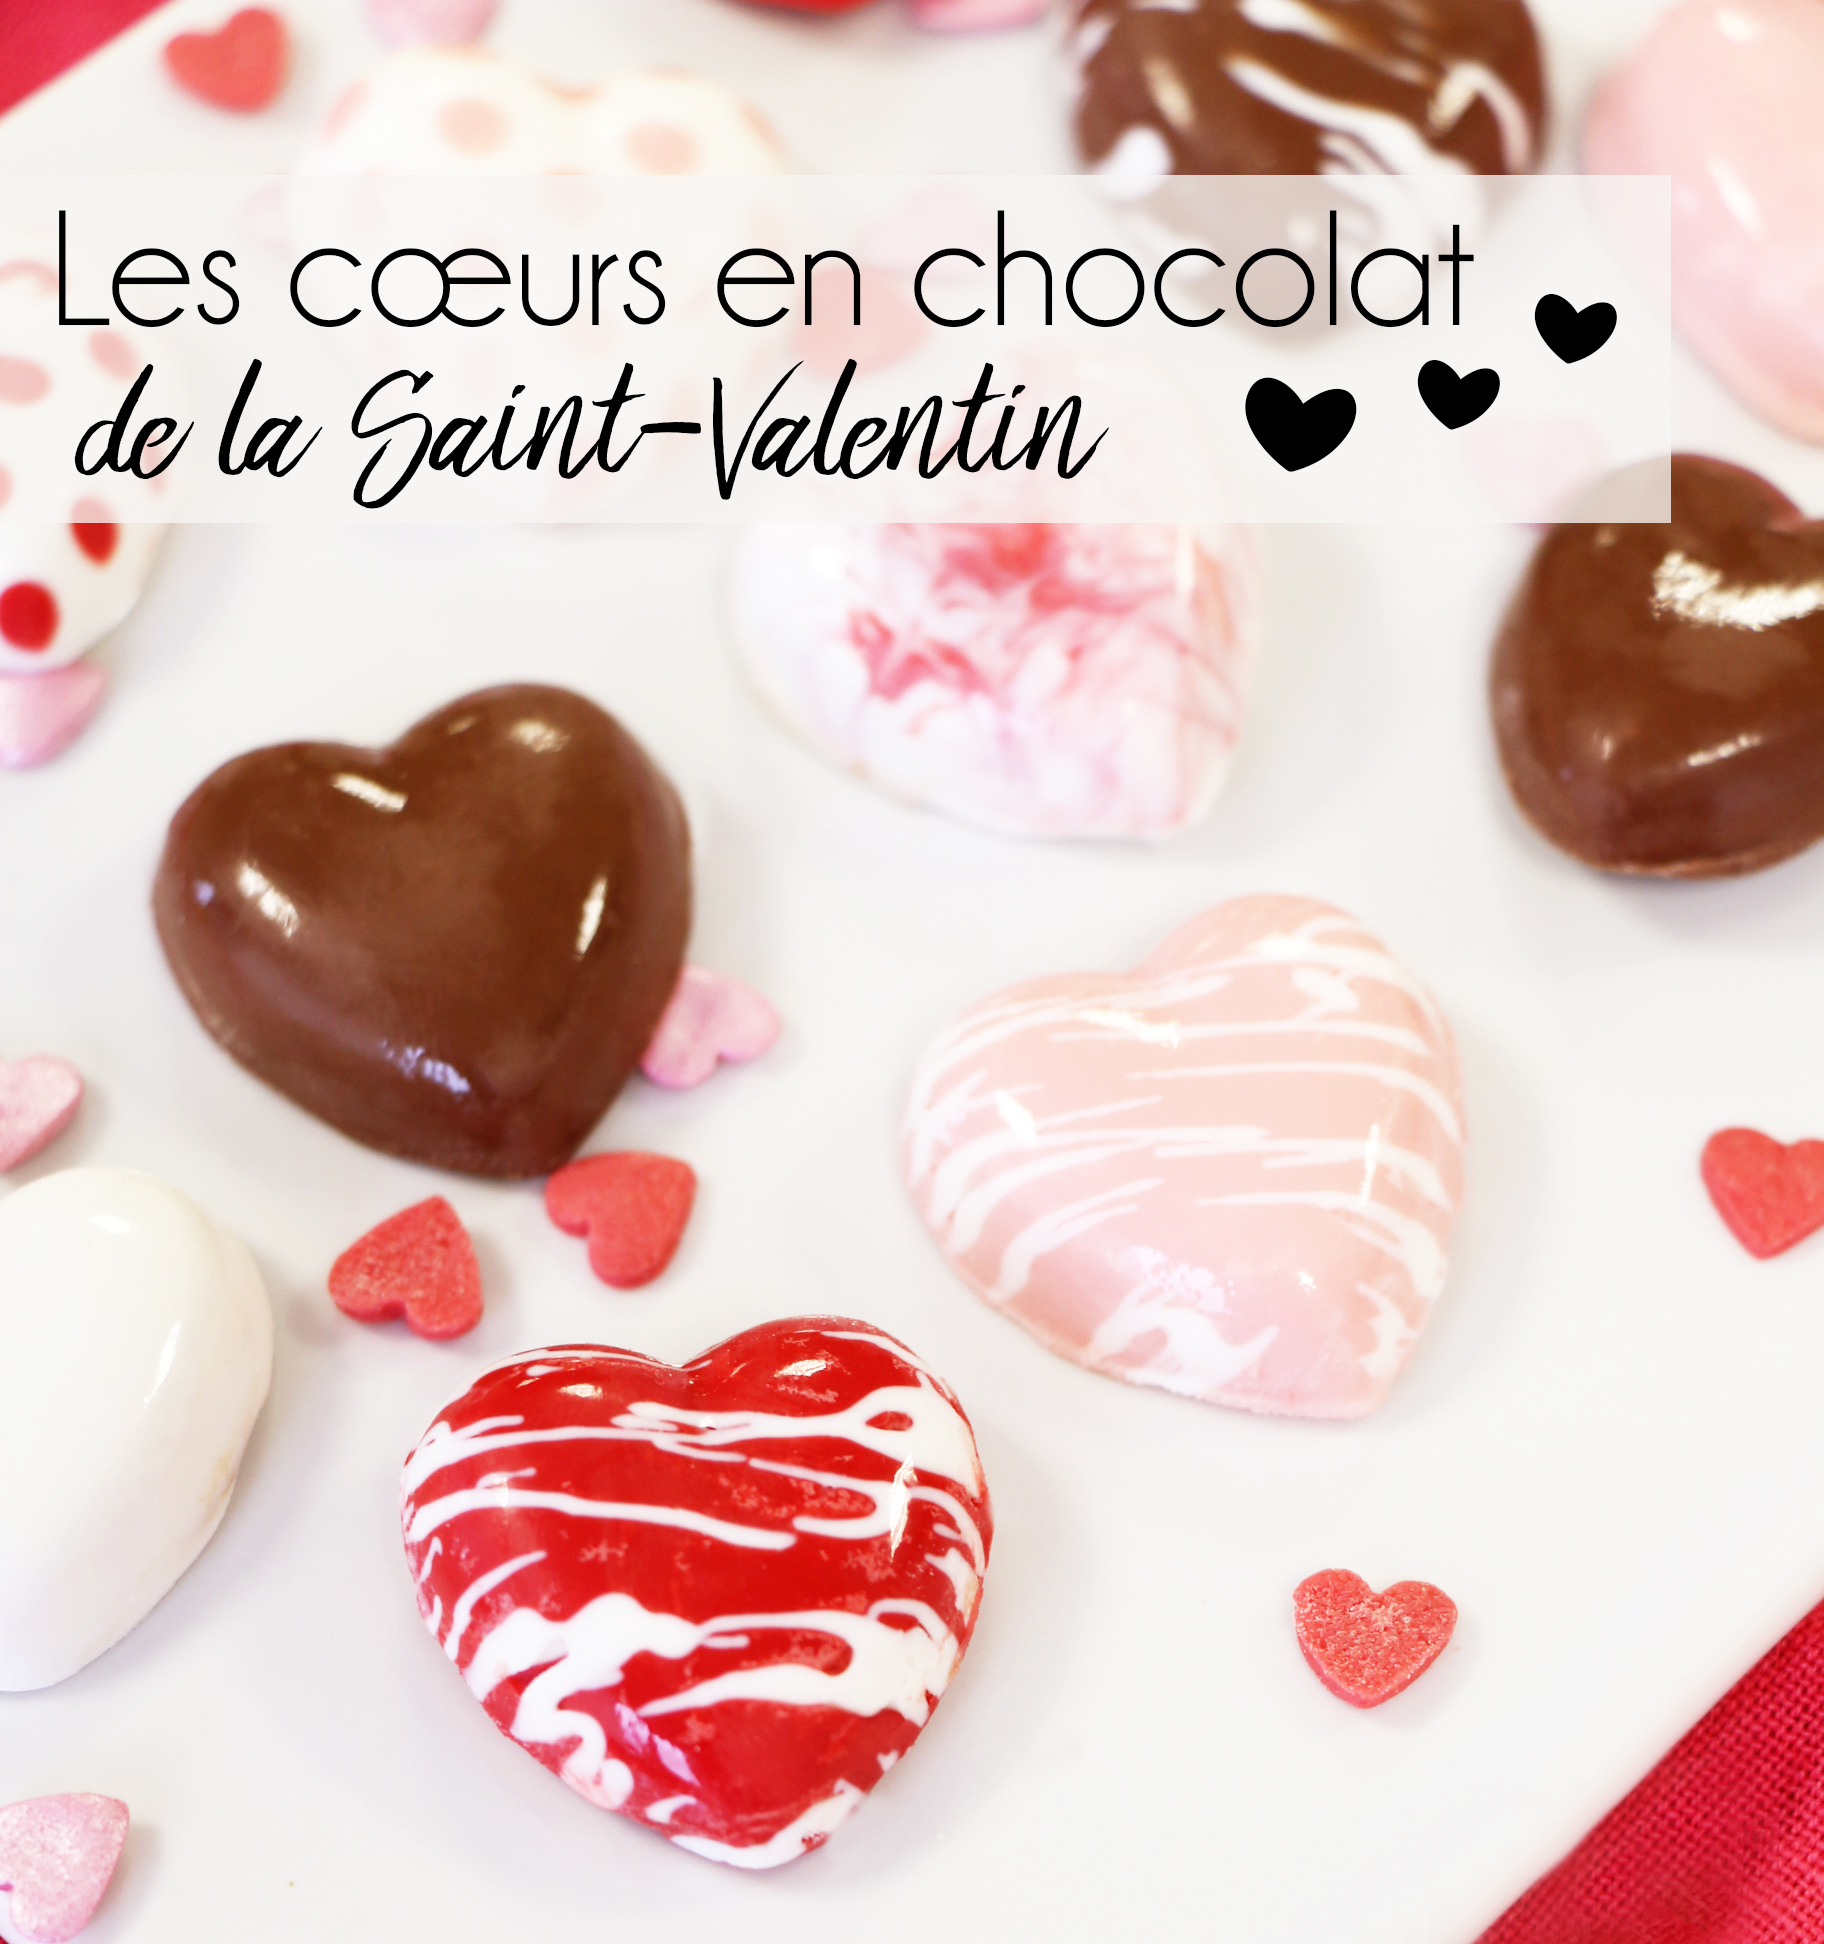 Les cœurs en chocolat de la Saint-Valentin - Féerie cake